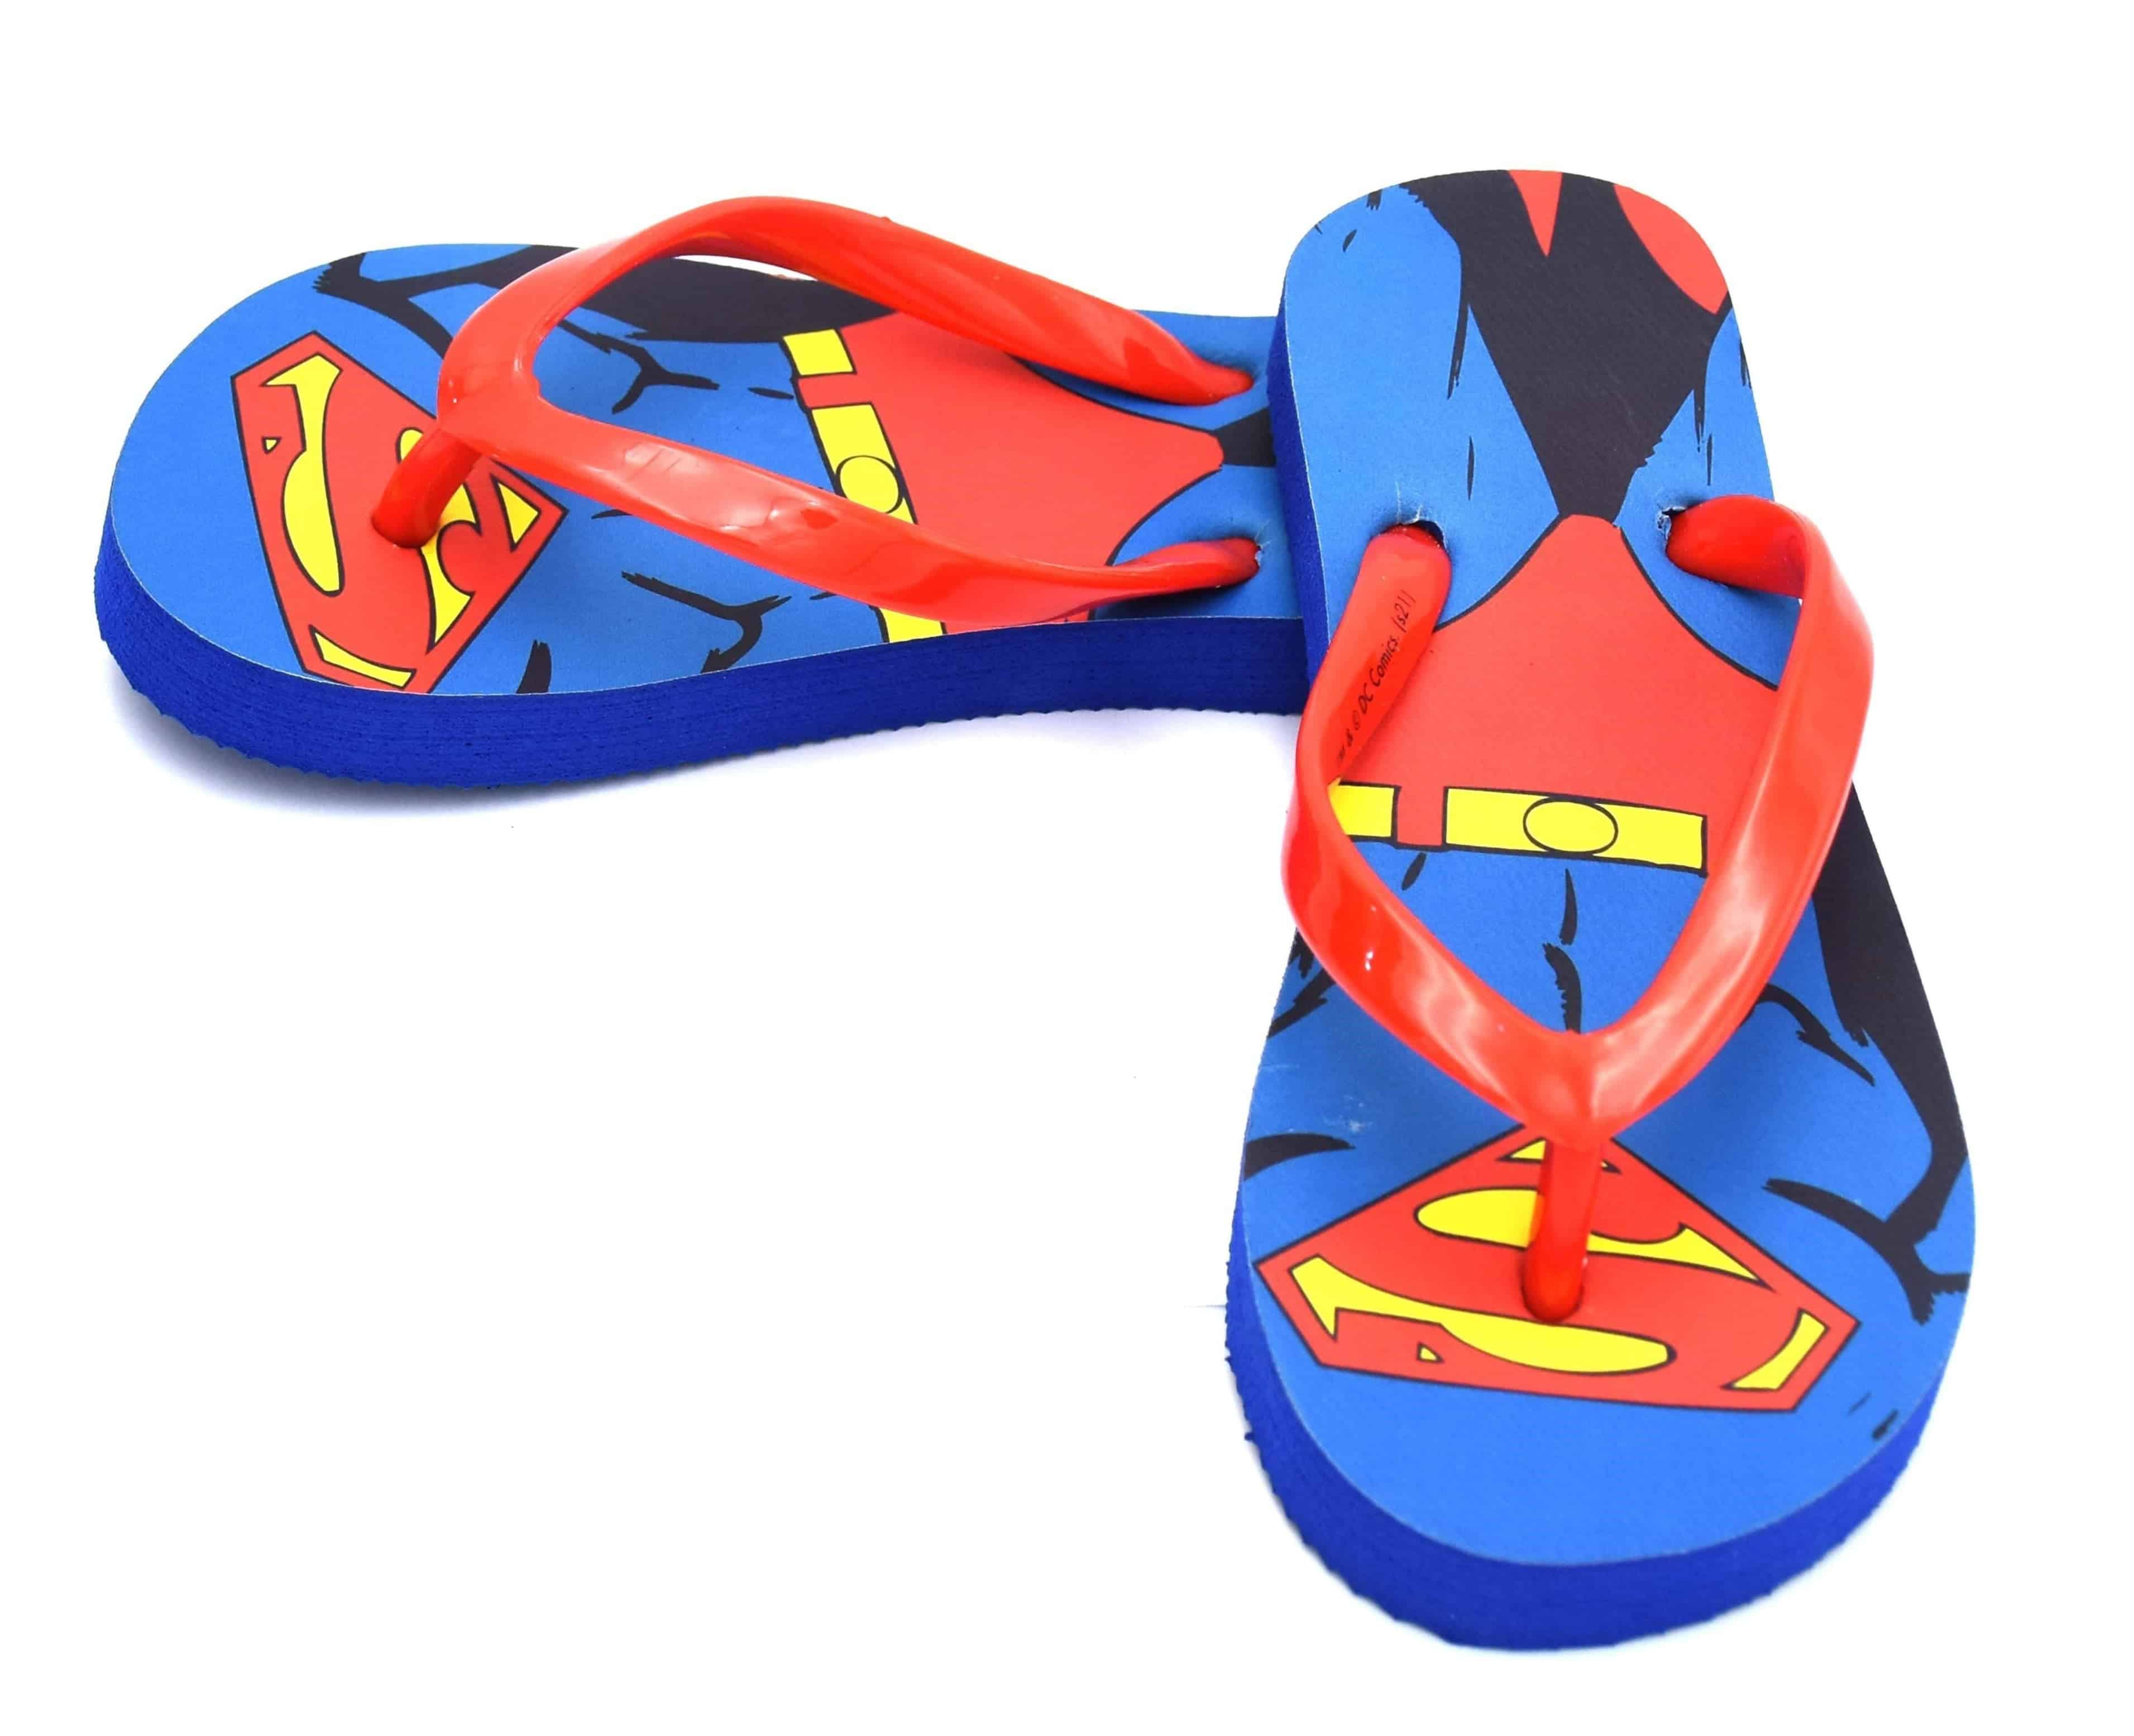 Marvel Superman®️ Boy’s beach Flip Flop for kids - Dealz Souq